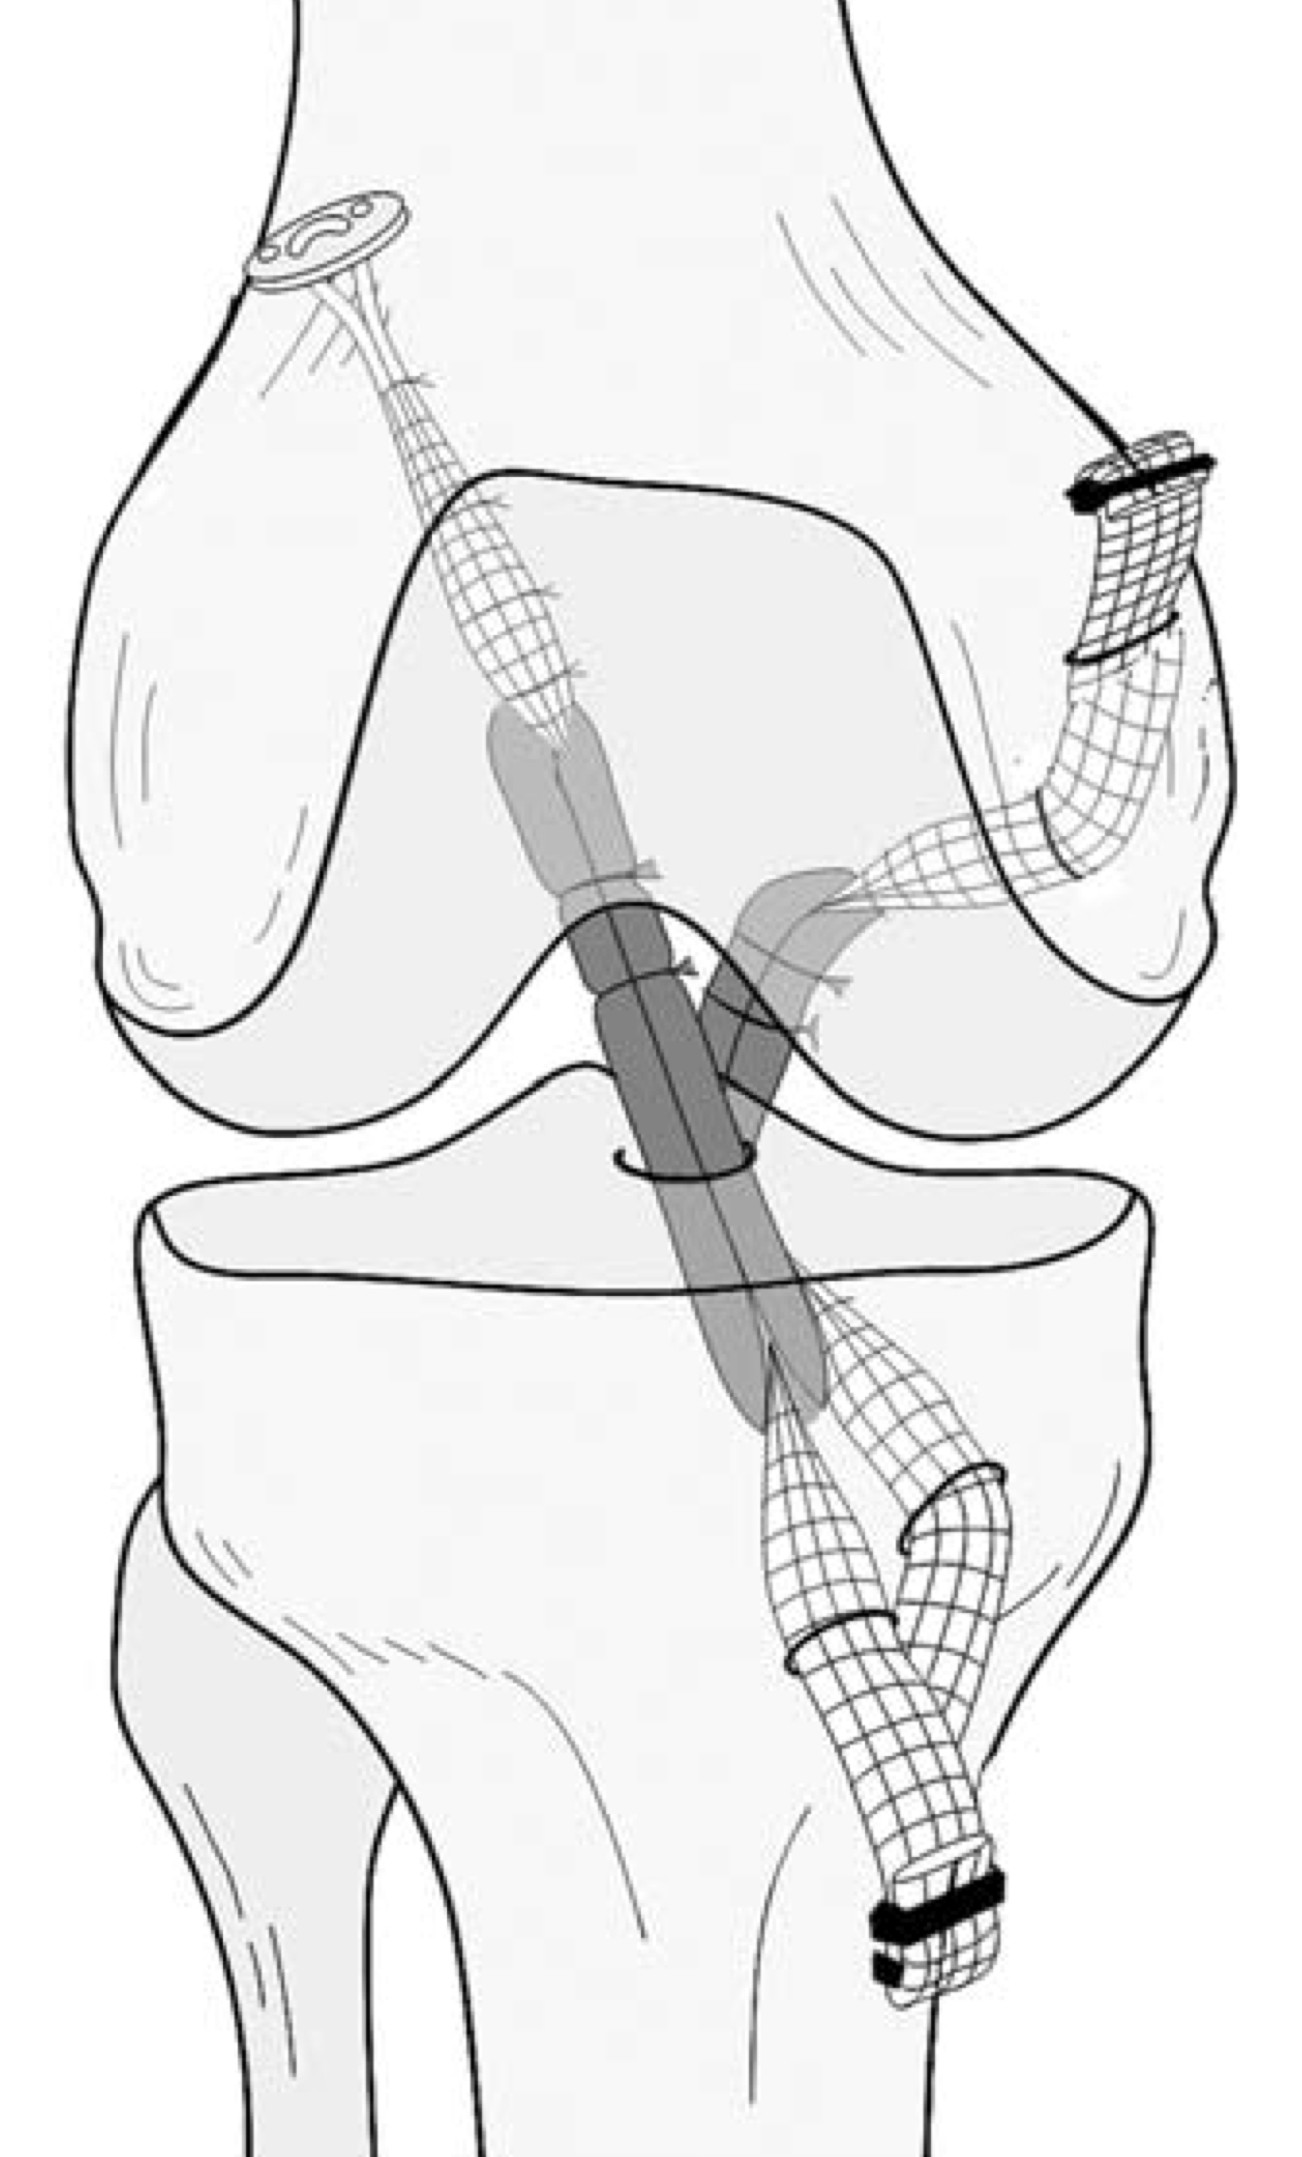 navrtá kanálek do kloubní dutiny a jím se navrtá další tunel v laterálním kondylu femuru, do nichž se zavede připravený štěp s kostními bločky. Tyto bločky se zahojí do 6-8 týdnů (Chaloupka, 2001).